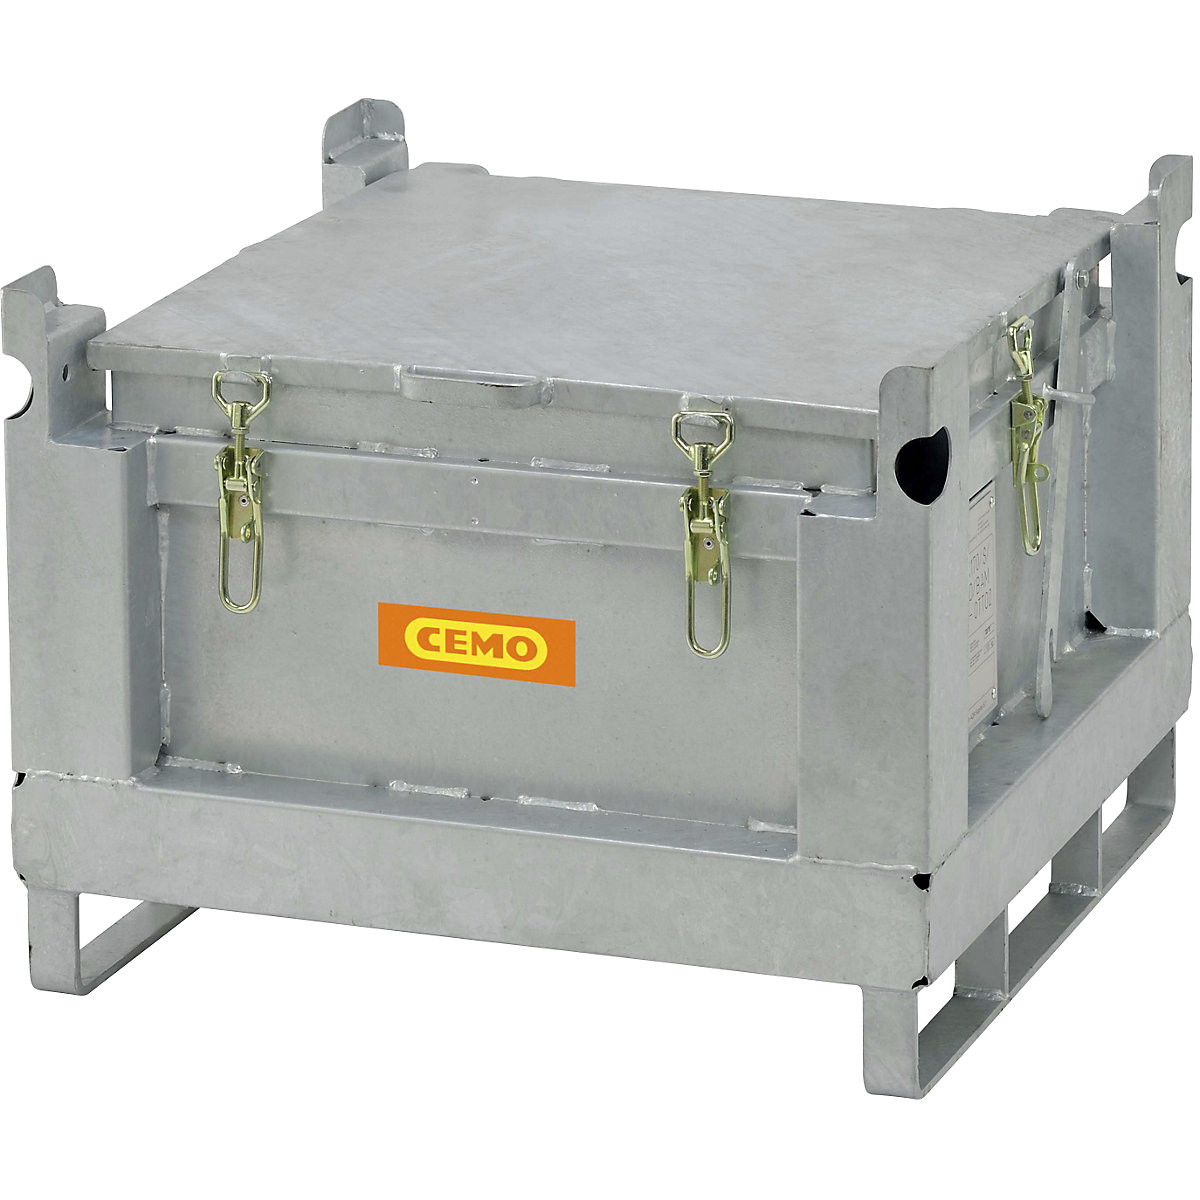 Čelični spremnik za sakupljanje i transport akumulatora – CEMO